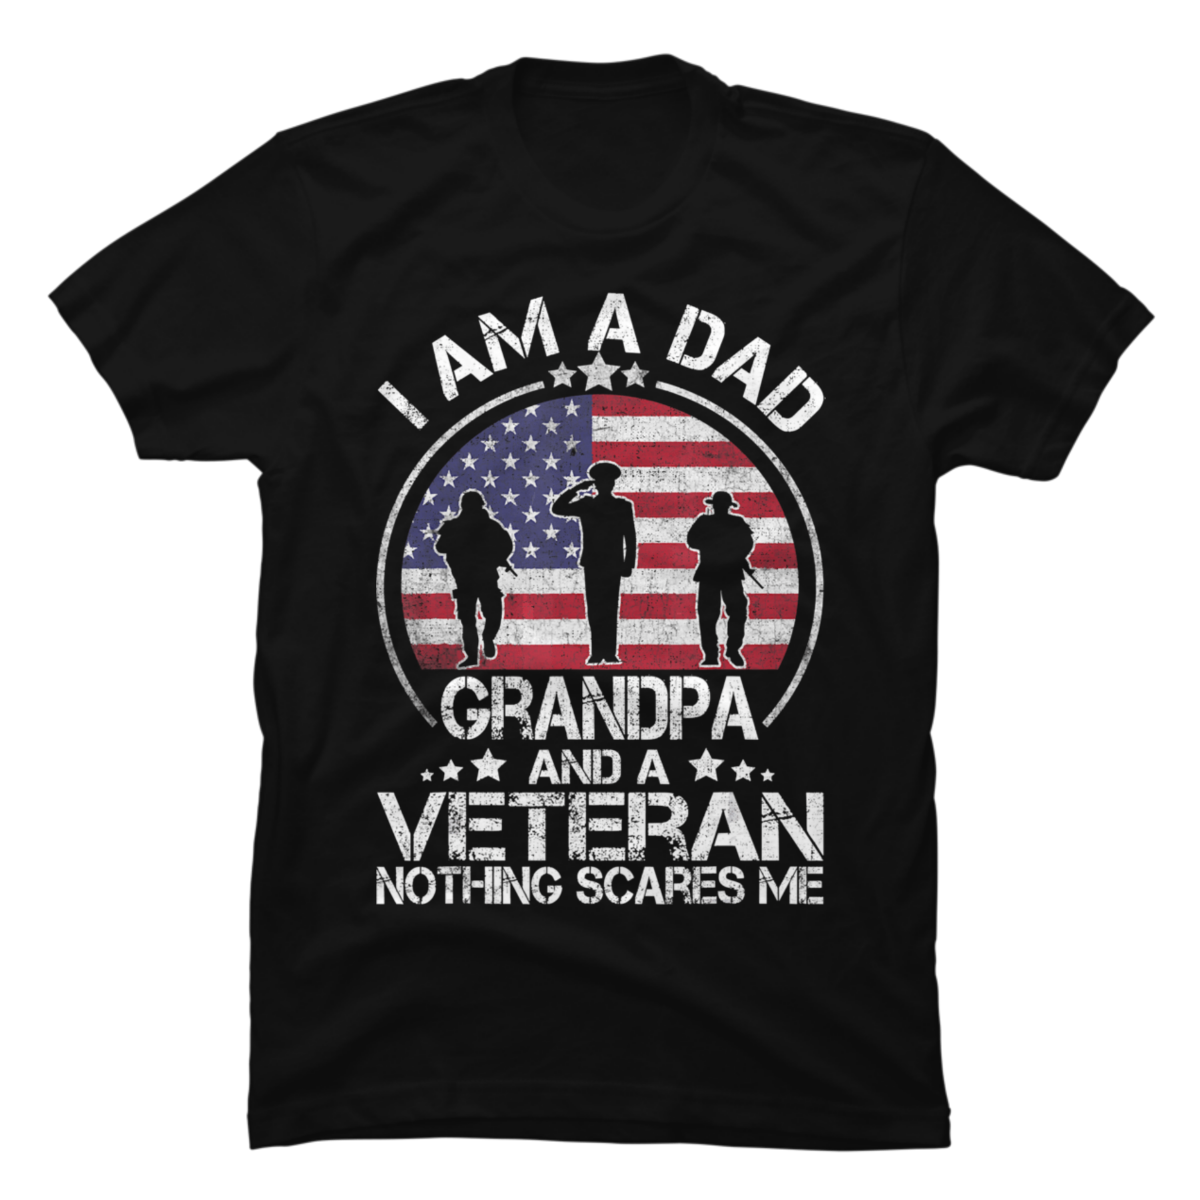 grandpa veteran shirt